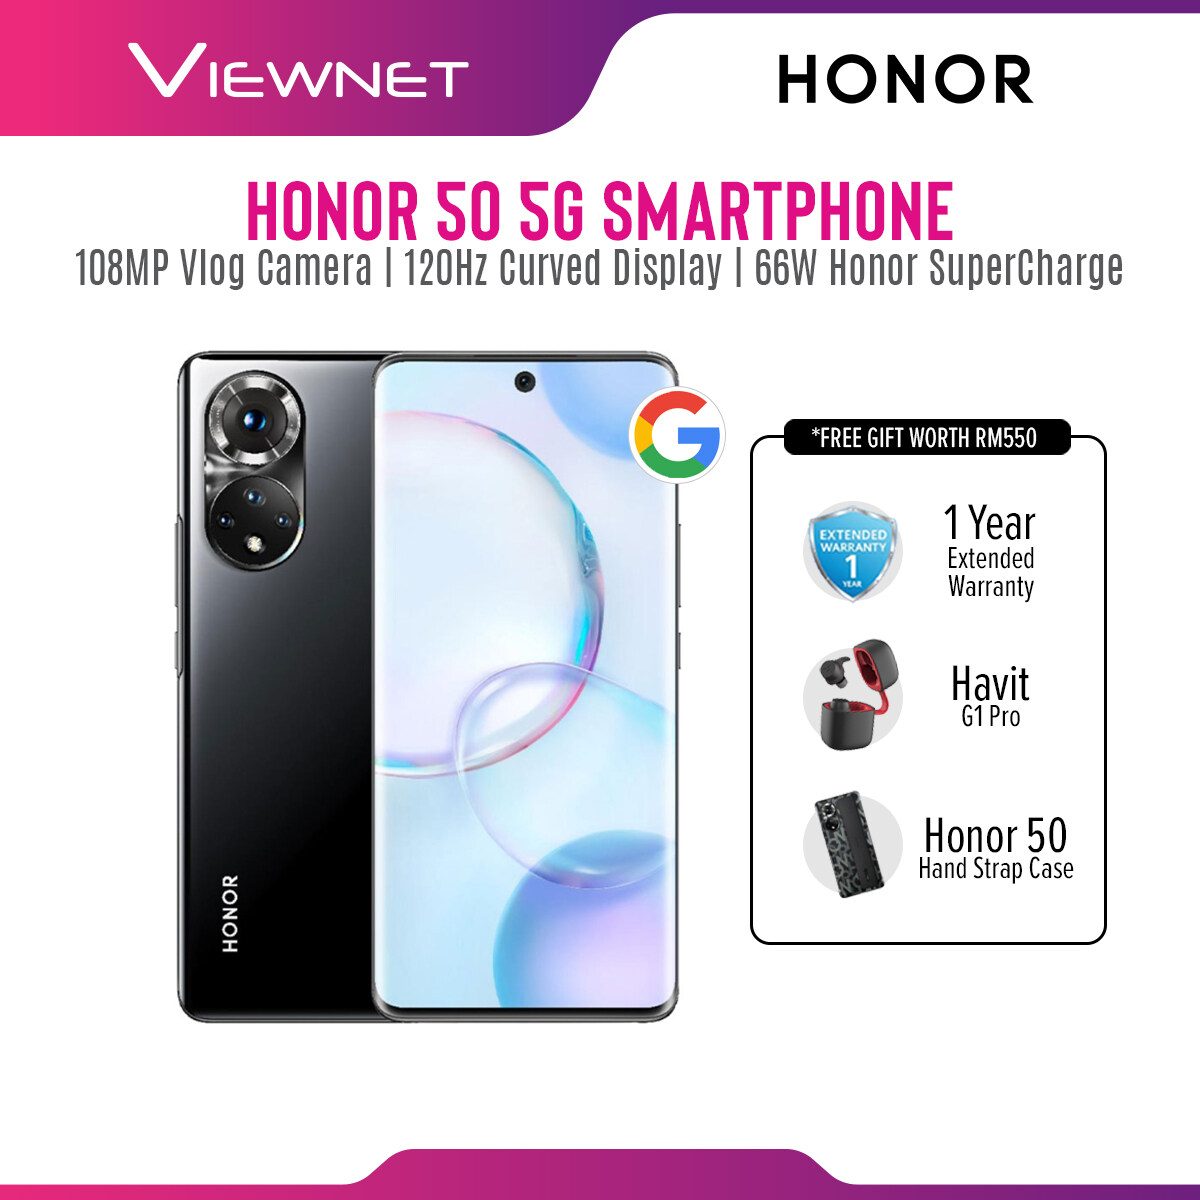 HONOR 50 (8GB+256GB) - 1+1 Year Warranty 